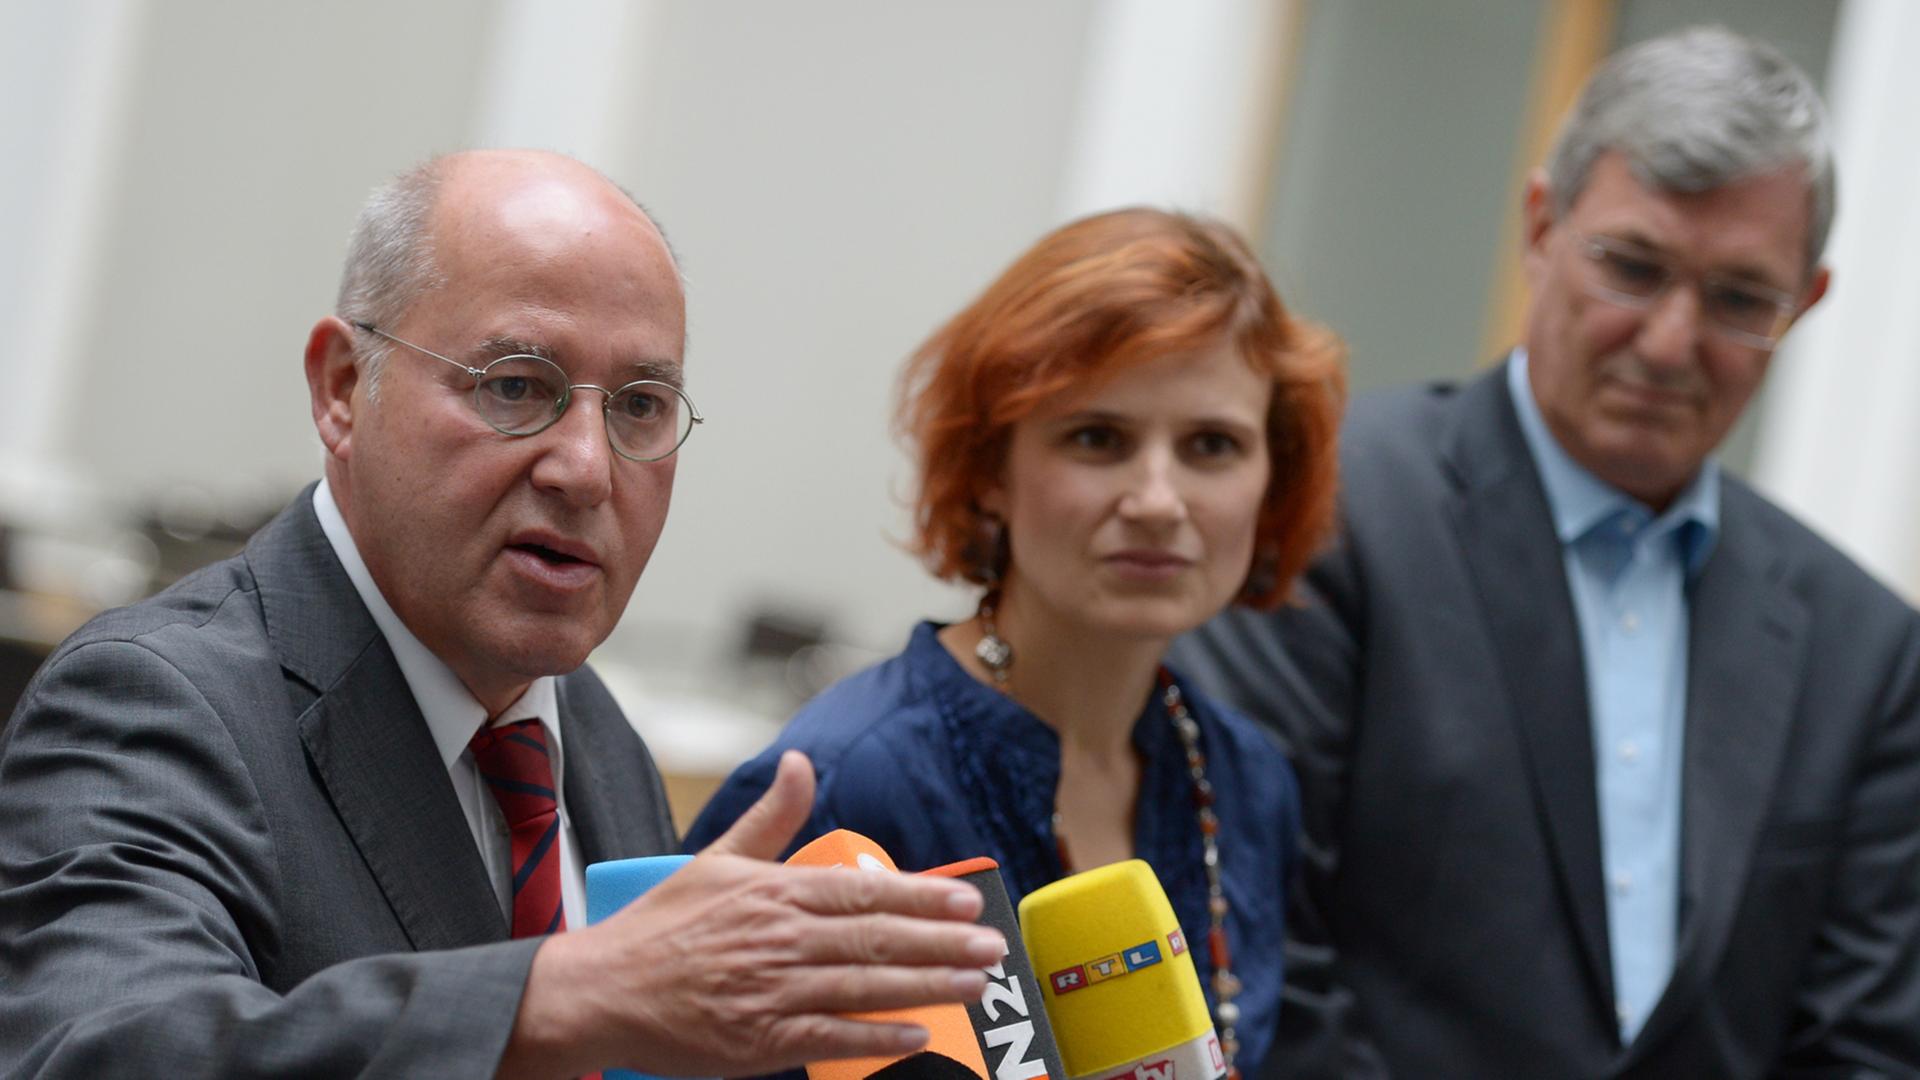 Die Parteivorsitzenden der Partei Die Linke, Katja Kipping und Bernd Riexinger (r) sowie der Linke-Bundestagsfraktionsvorsitzende Gregor Gysi vor Mikrofonen